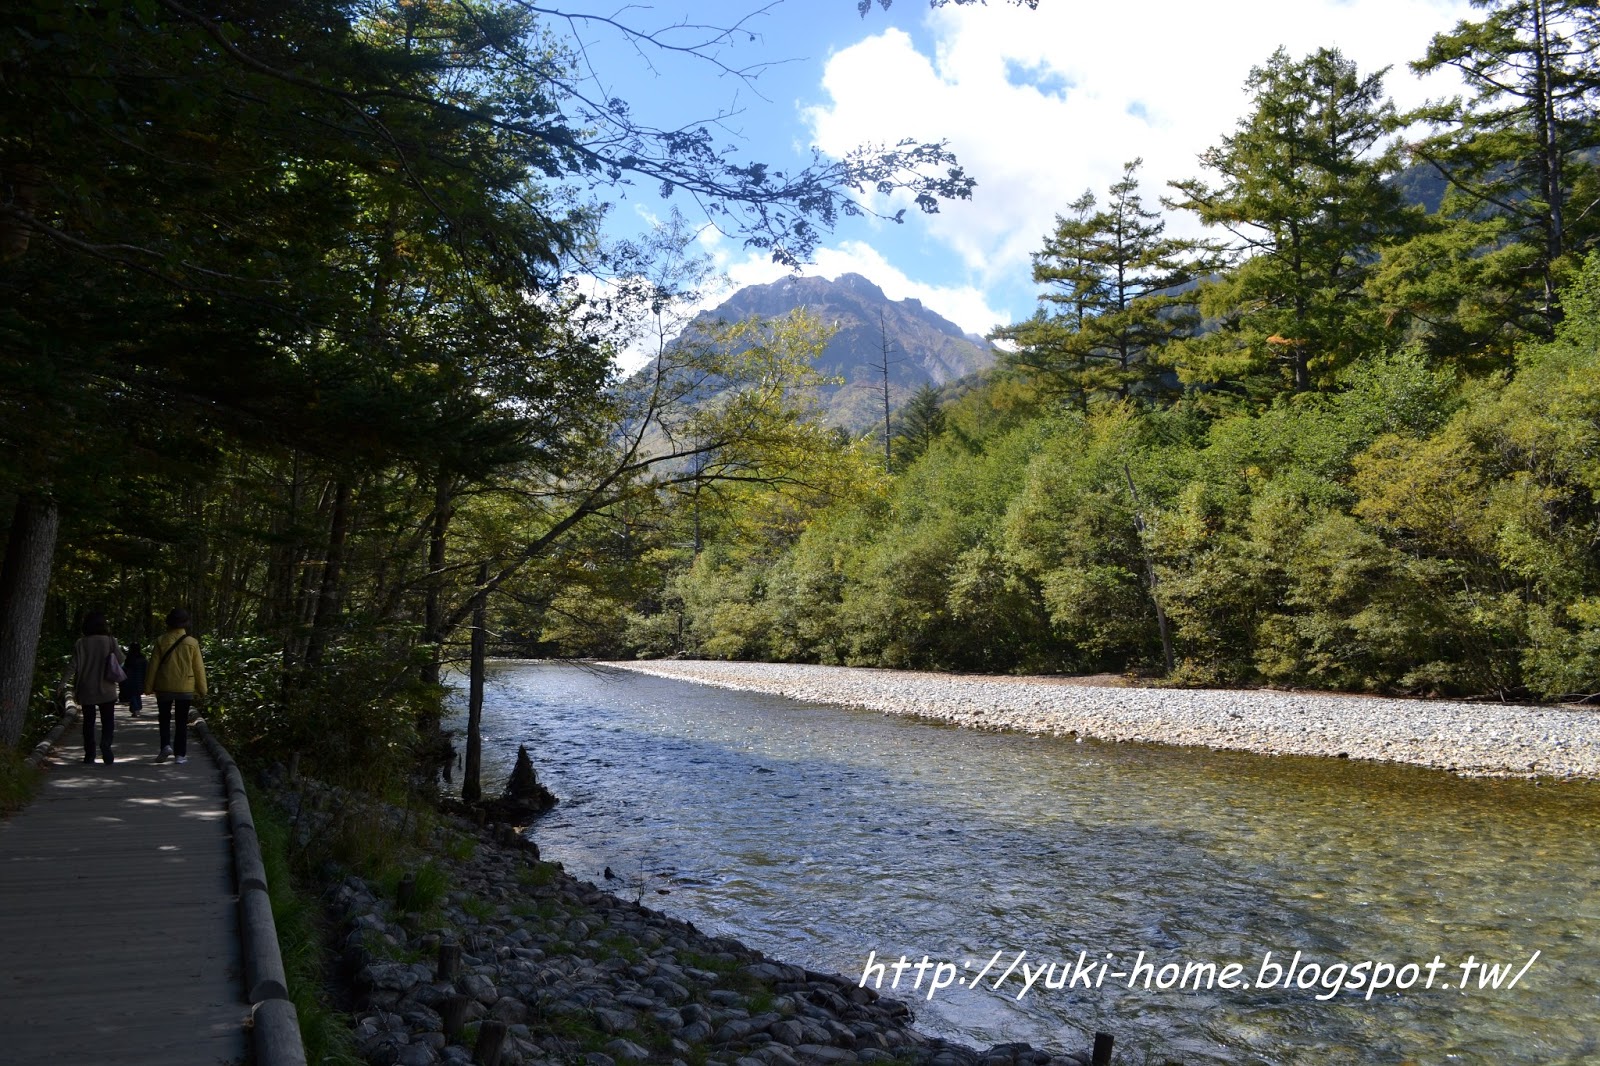 Yuki 的部落格: 《日本》2012年秋。上高地─美得像幅畫